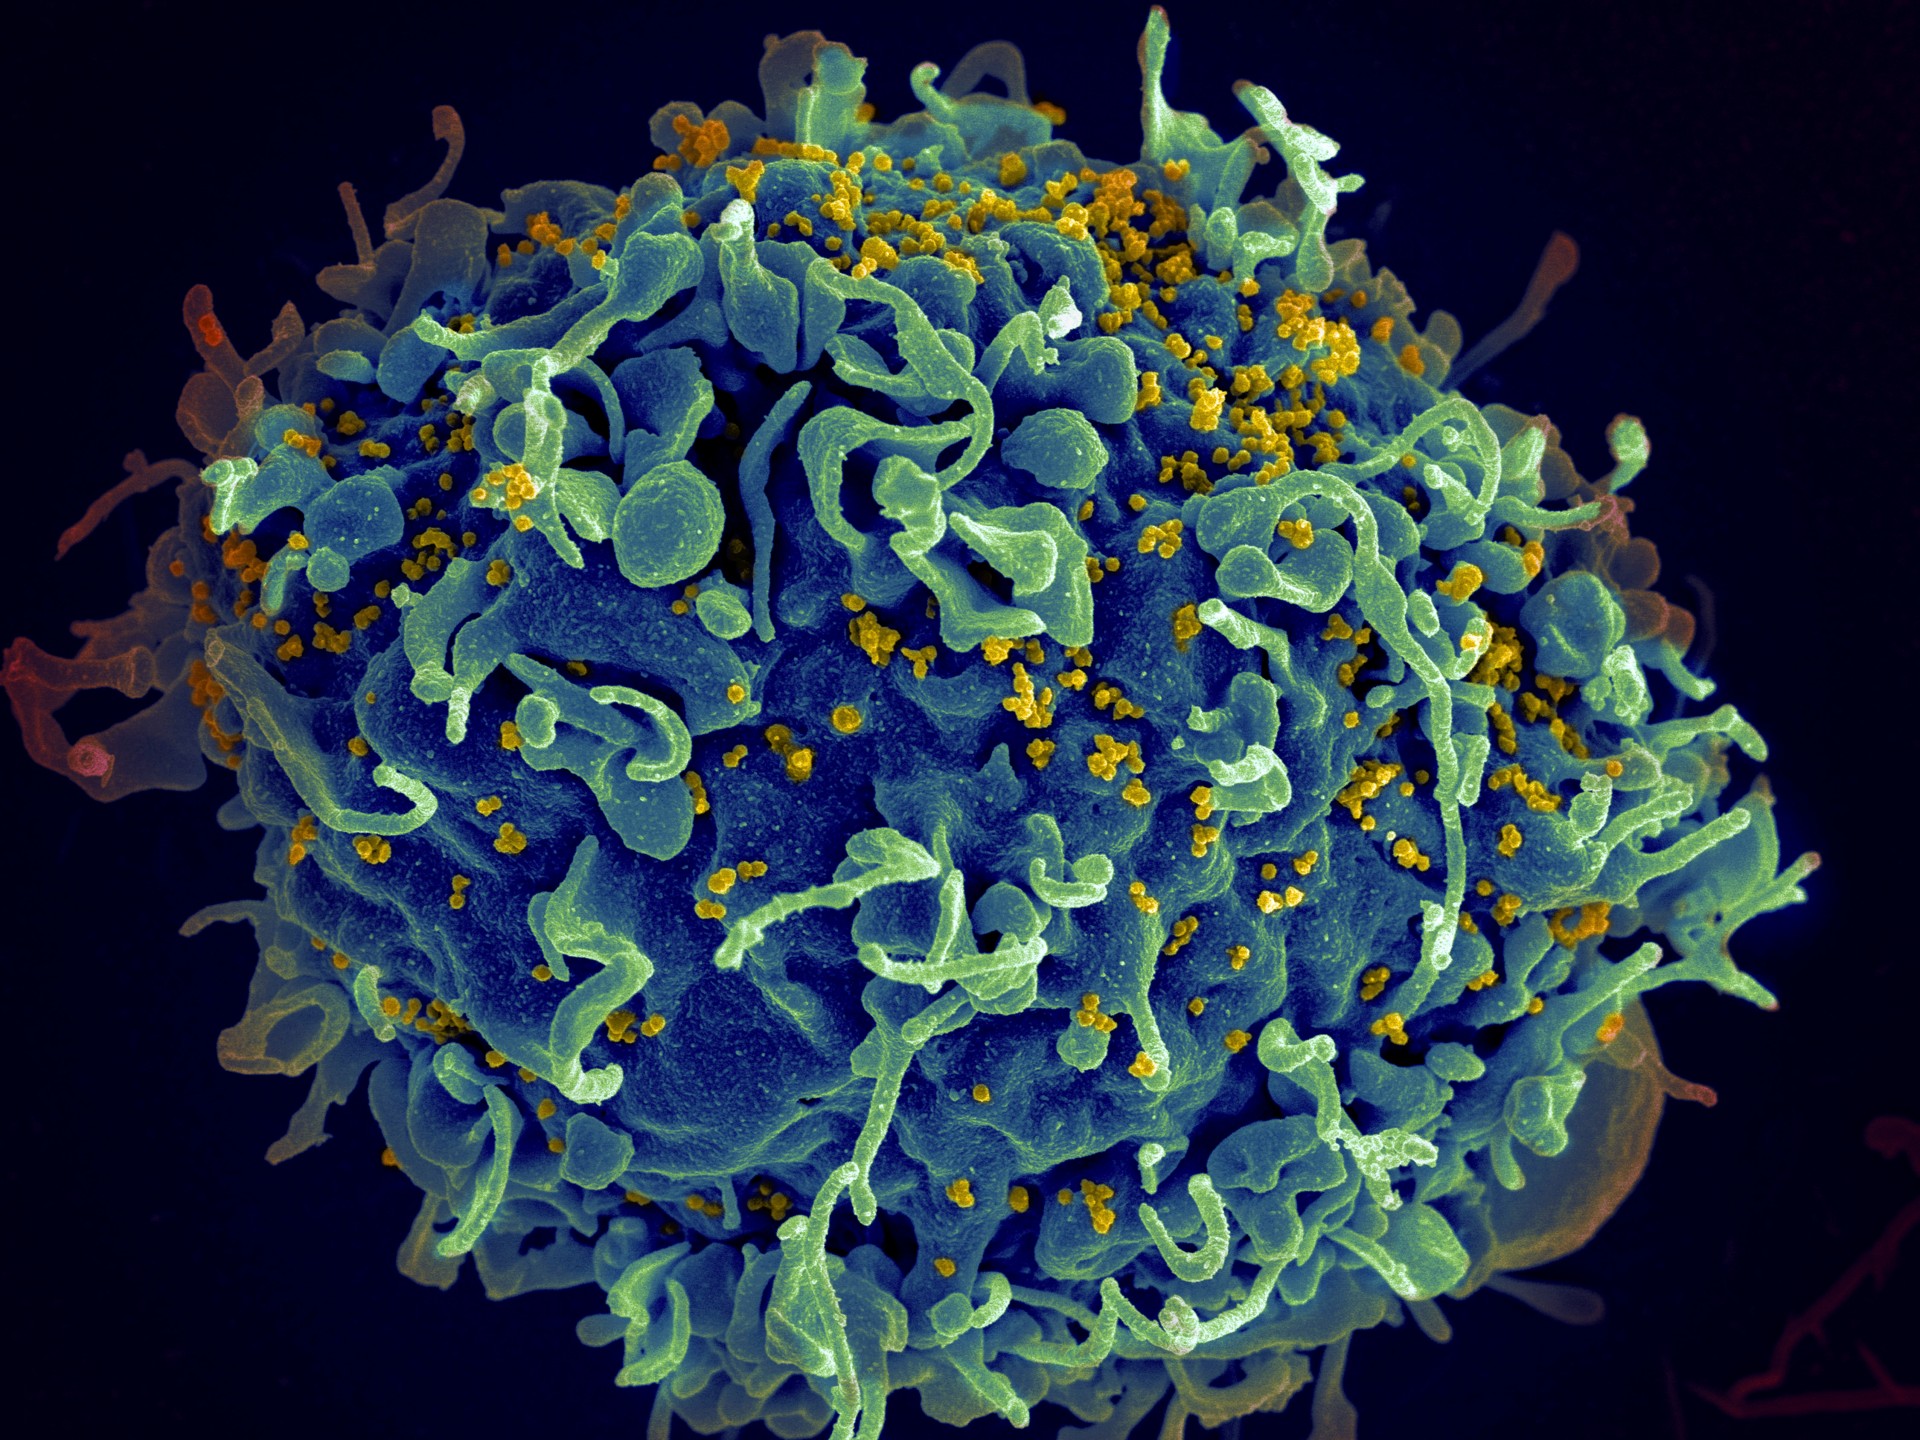 Sistema inmune de 'Paciente esperanza' elimina el VIH sin medicamentos